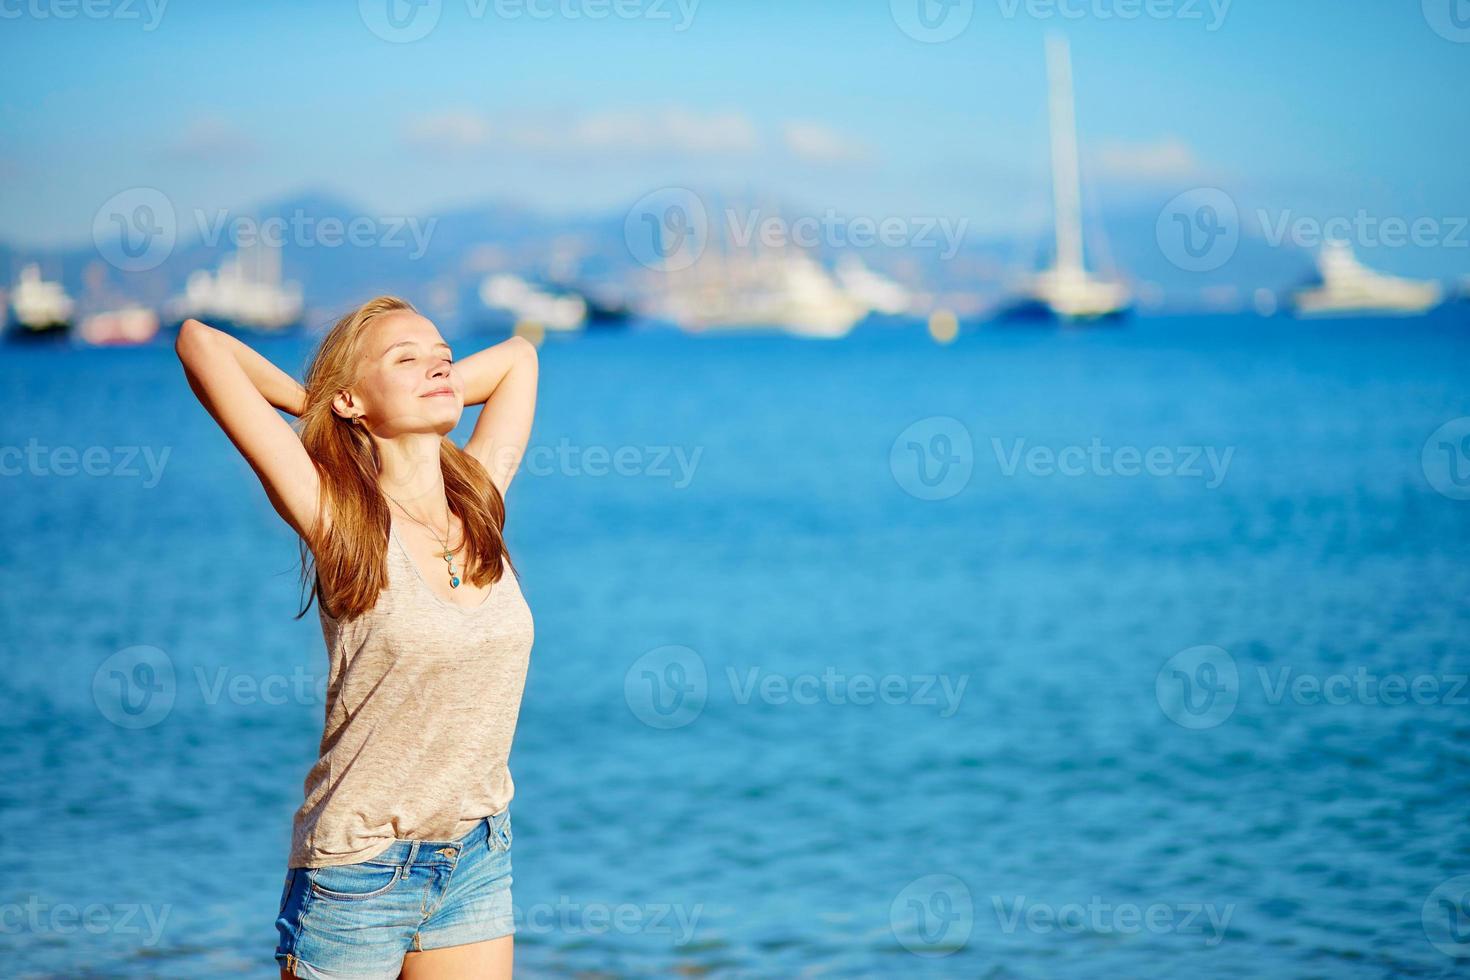 jeune fille profitant de ses vacances au bord de la mer photo